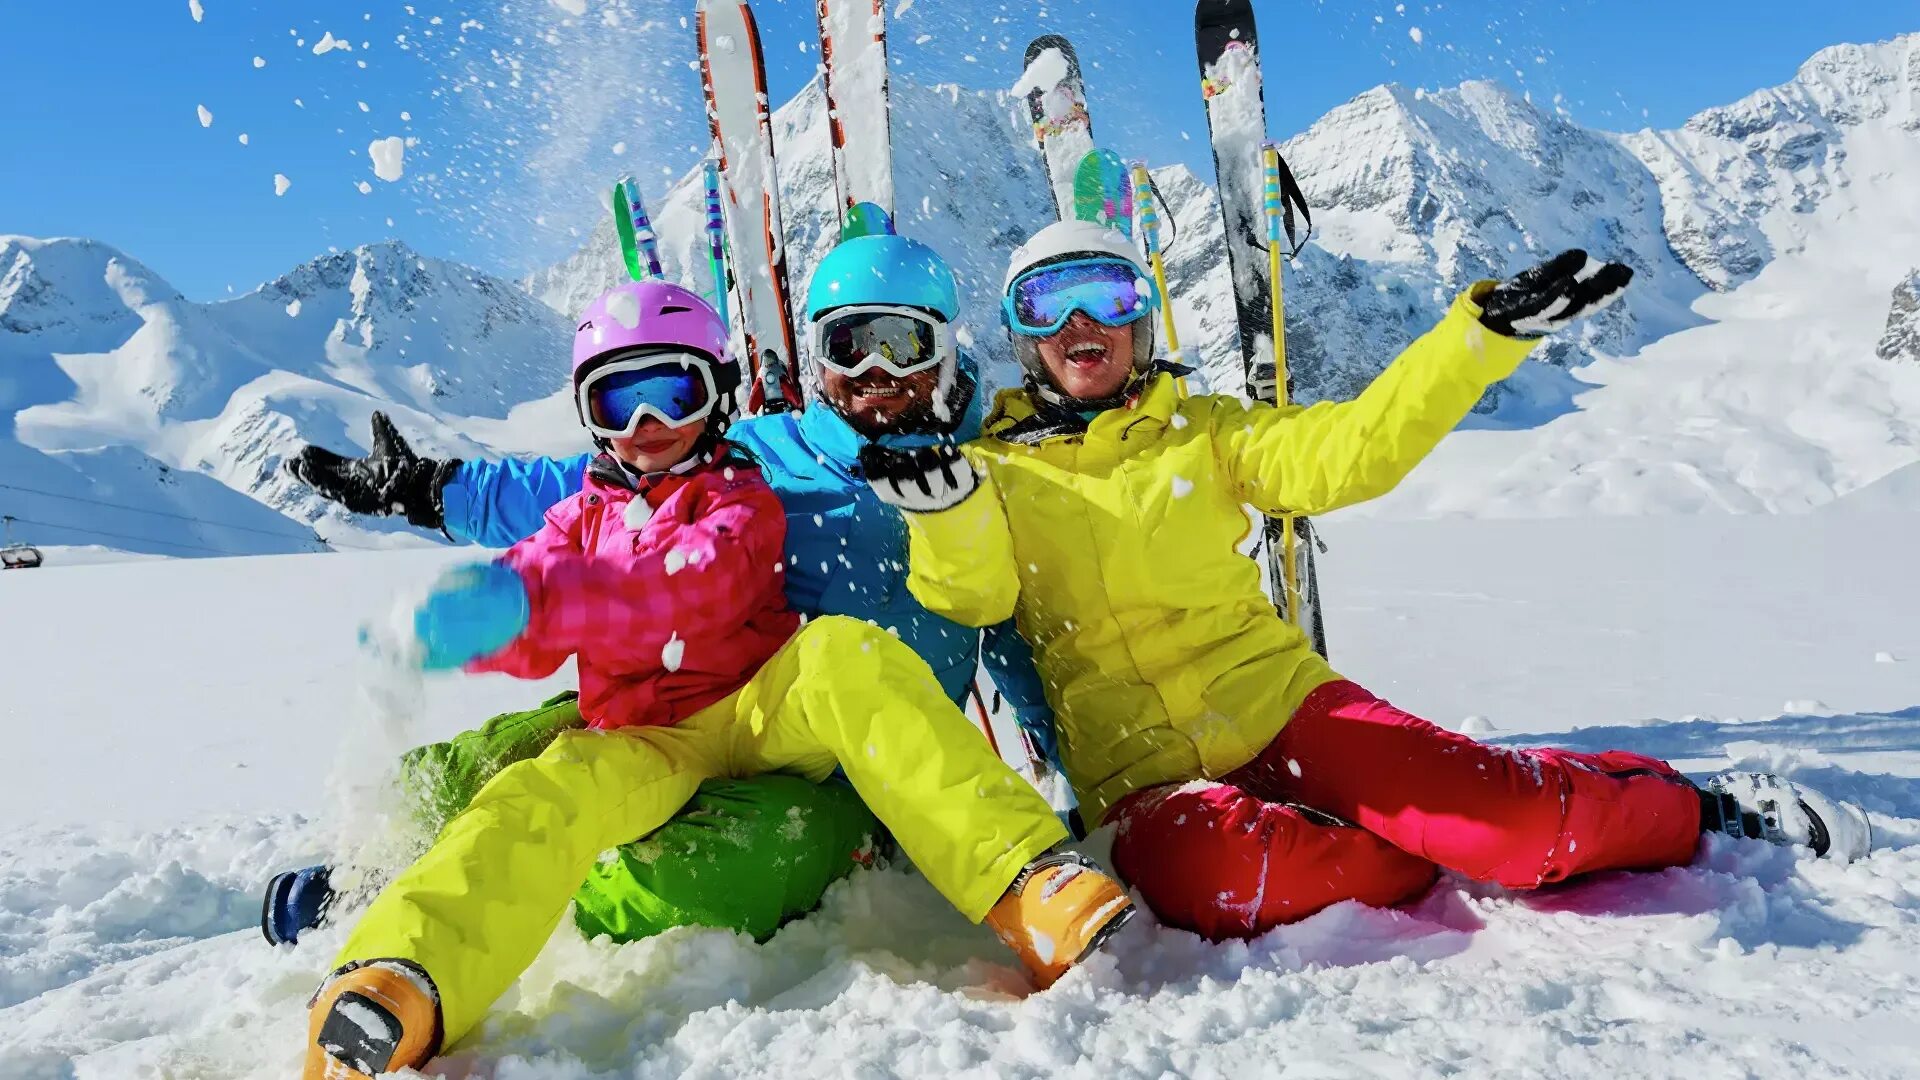 Горные развлечения. Горнолыжный туризм. Зимний спорт. Катание на горных лыжах. Люди на горнолыжном курорте.